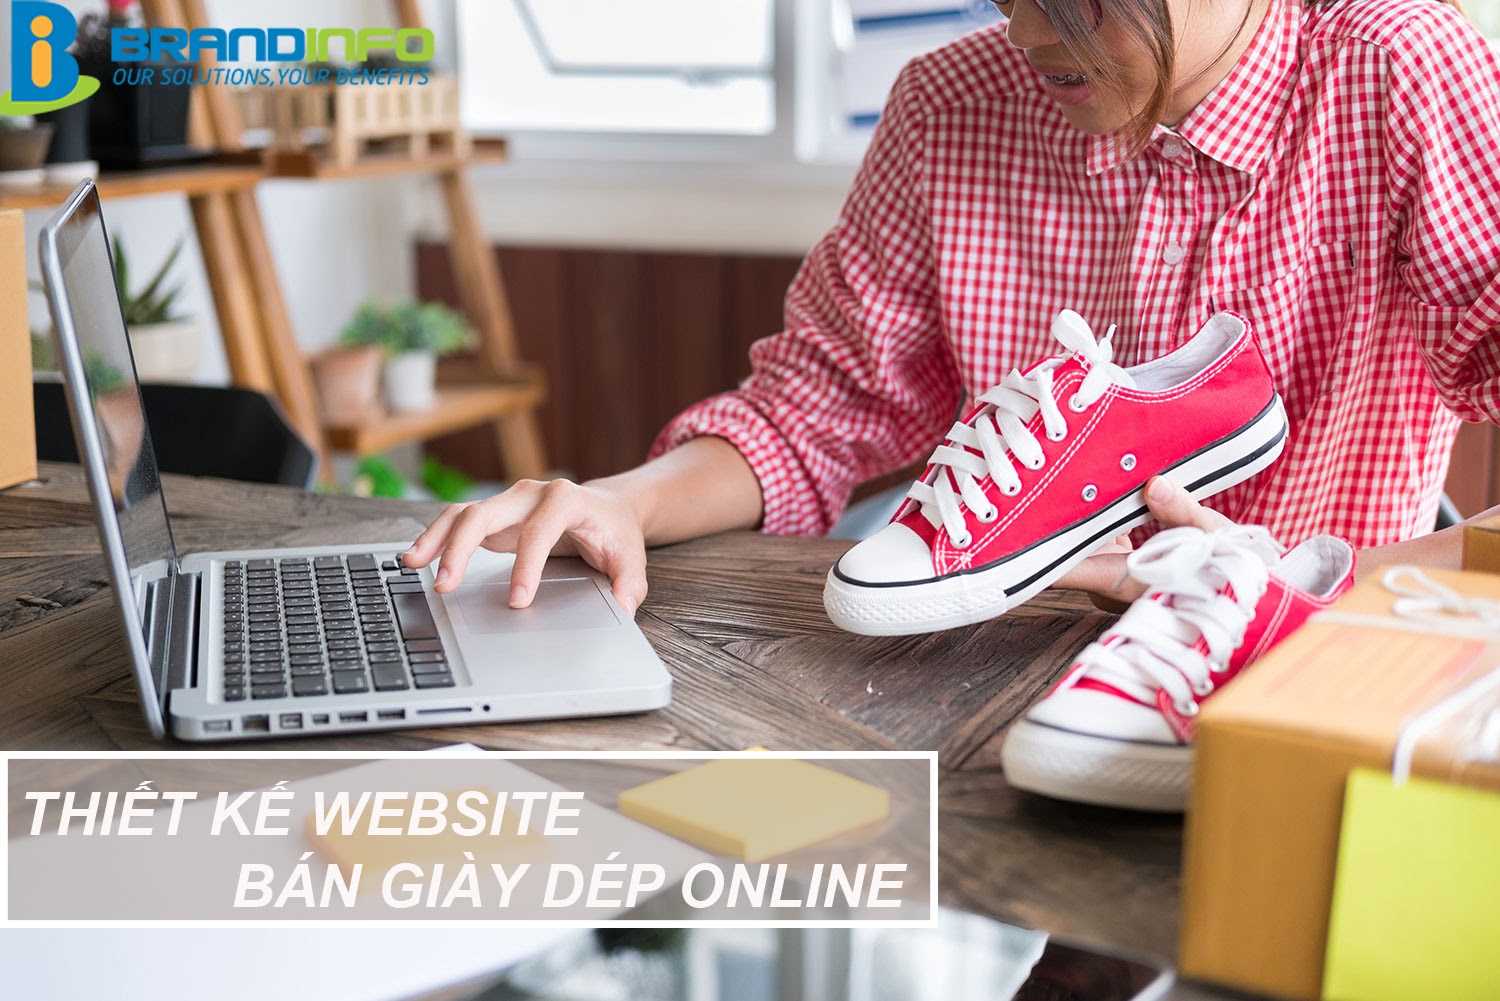 Thiết kế website bán giày dép cực hút khách hàng